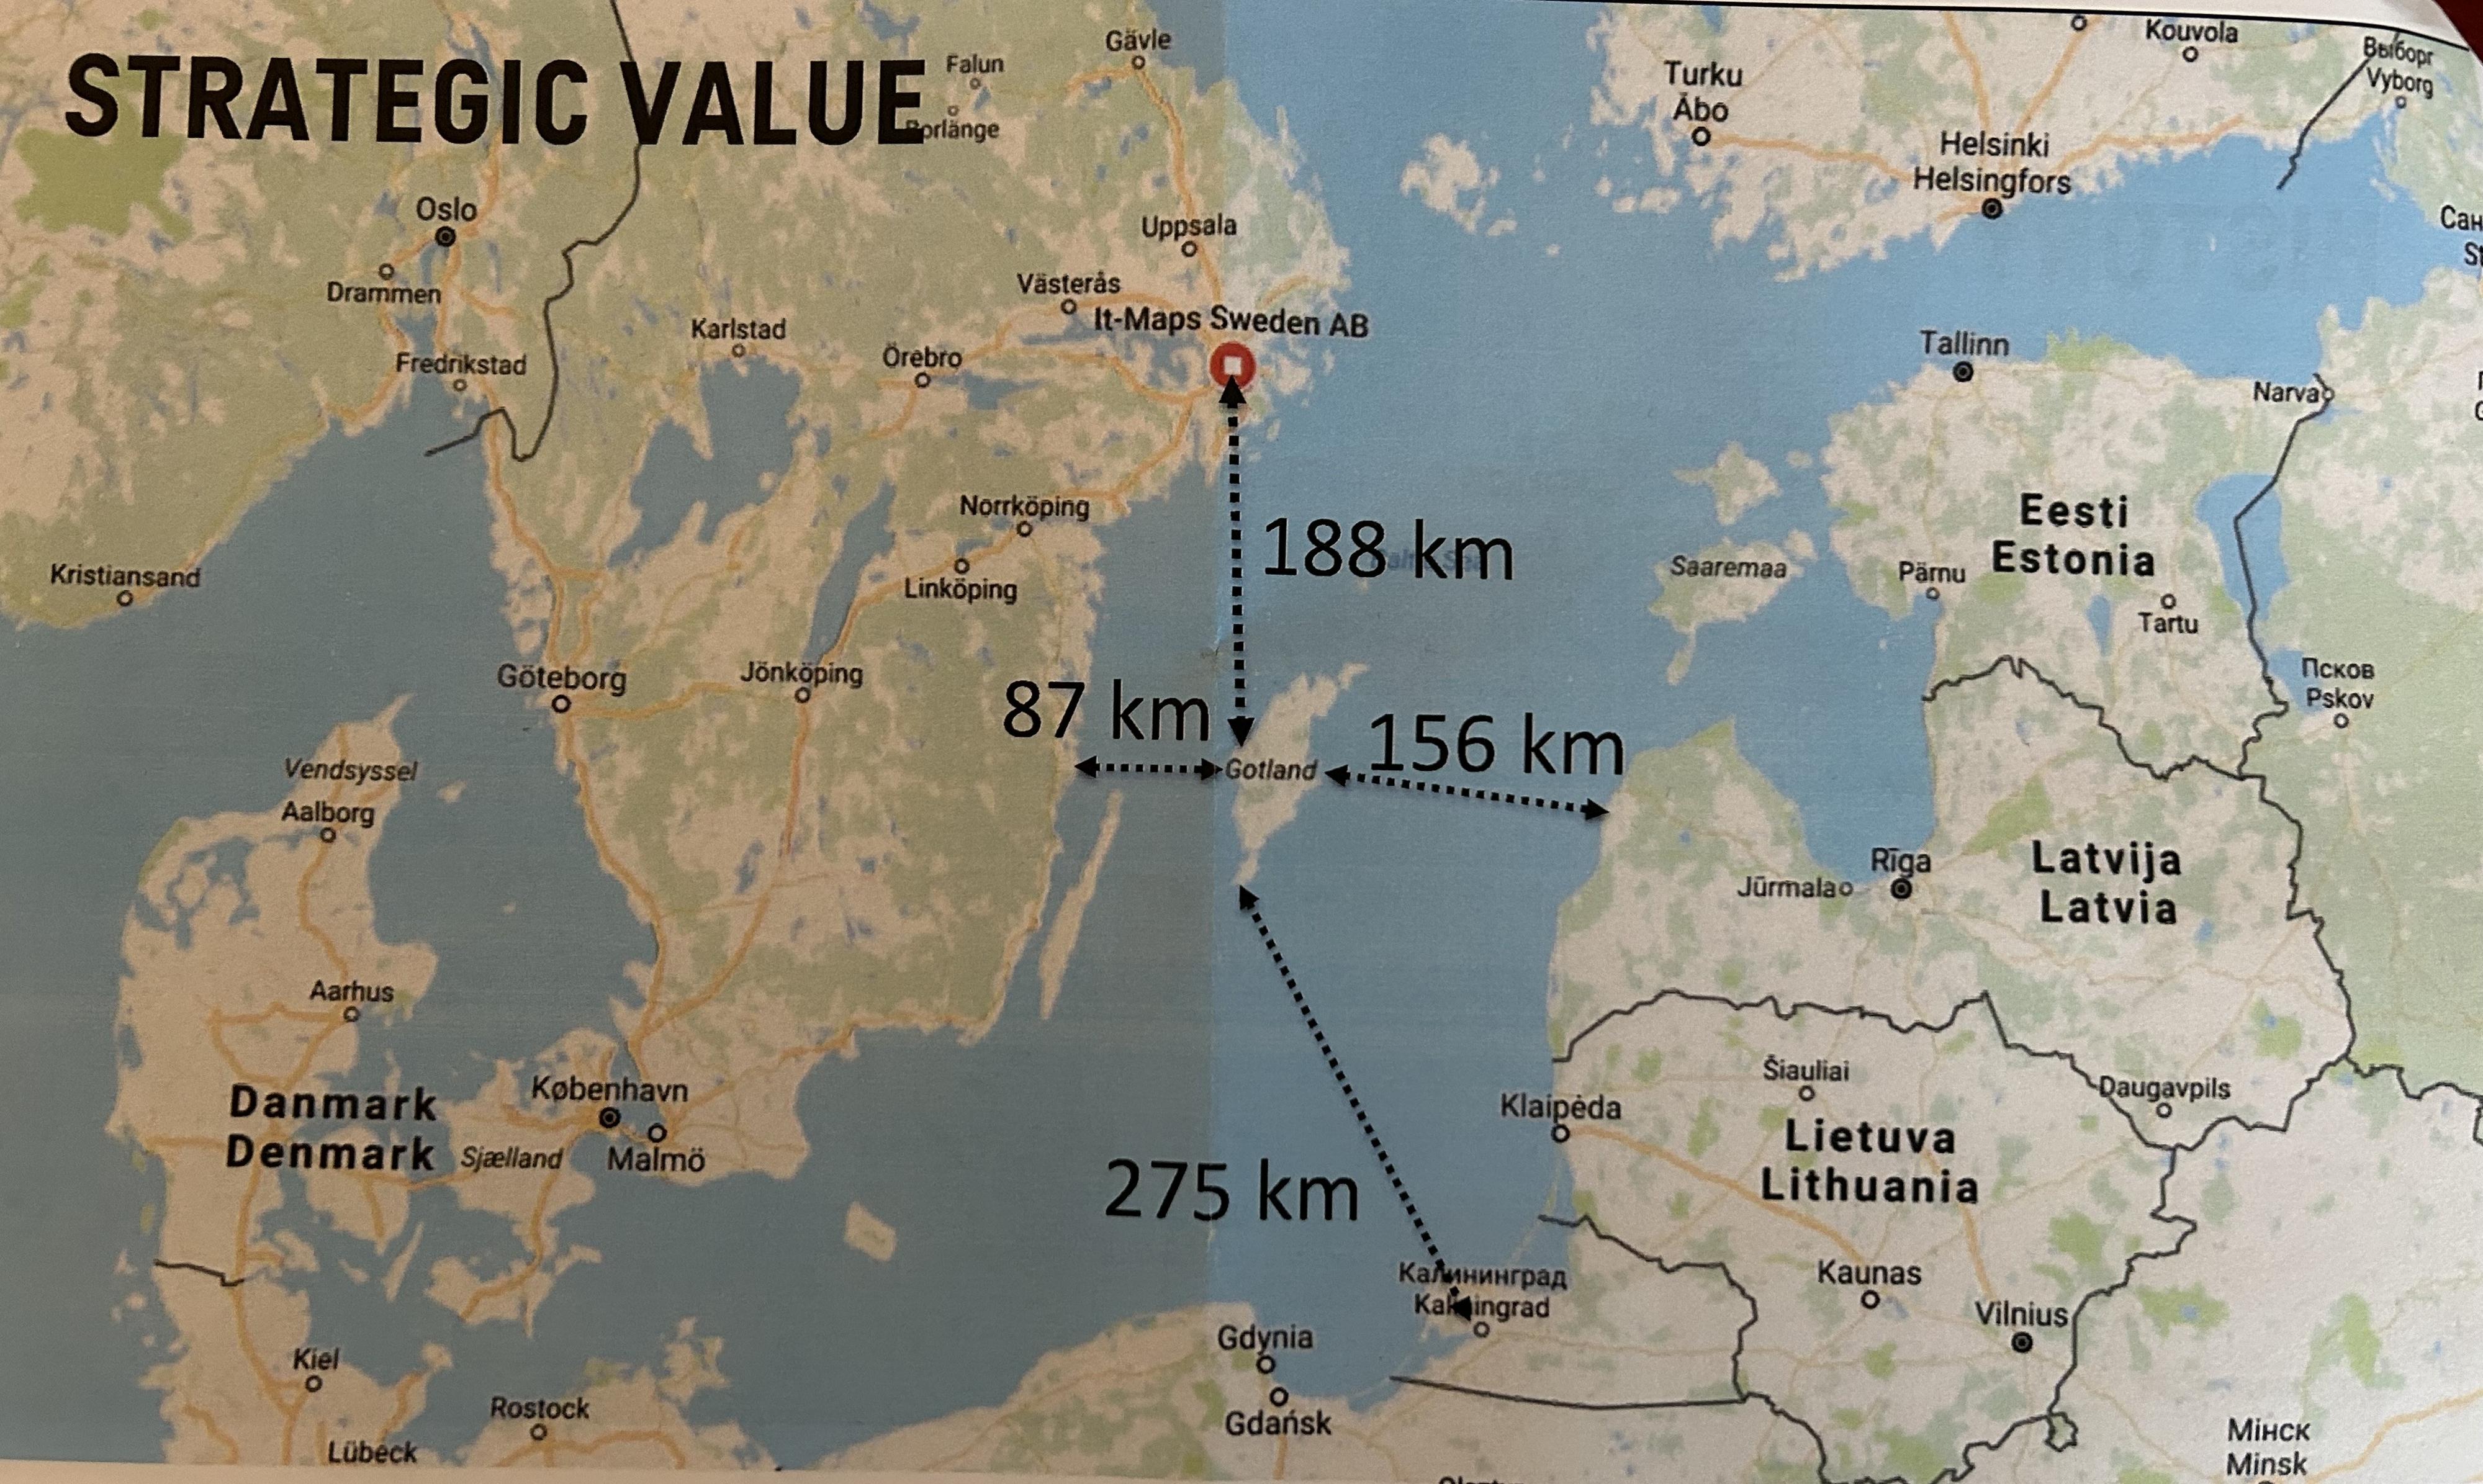 L'île de Gotland, bastion stratégique au milieu de la mer Baltique.